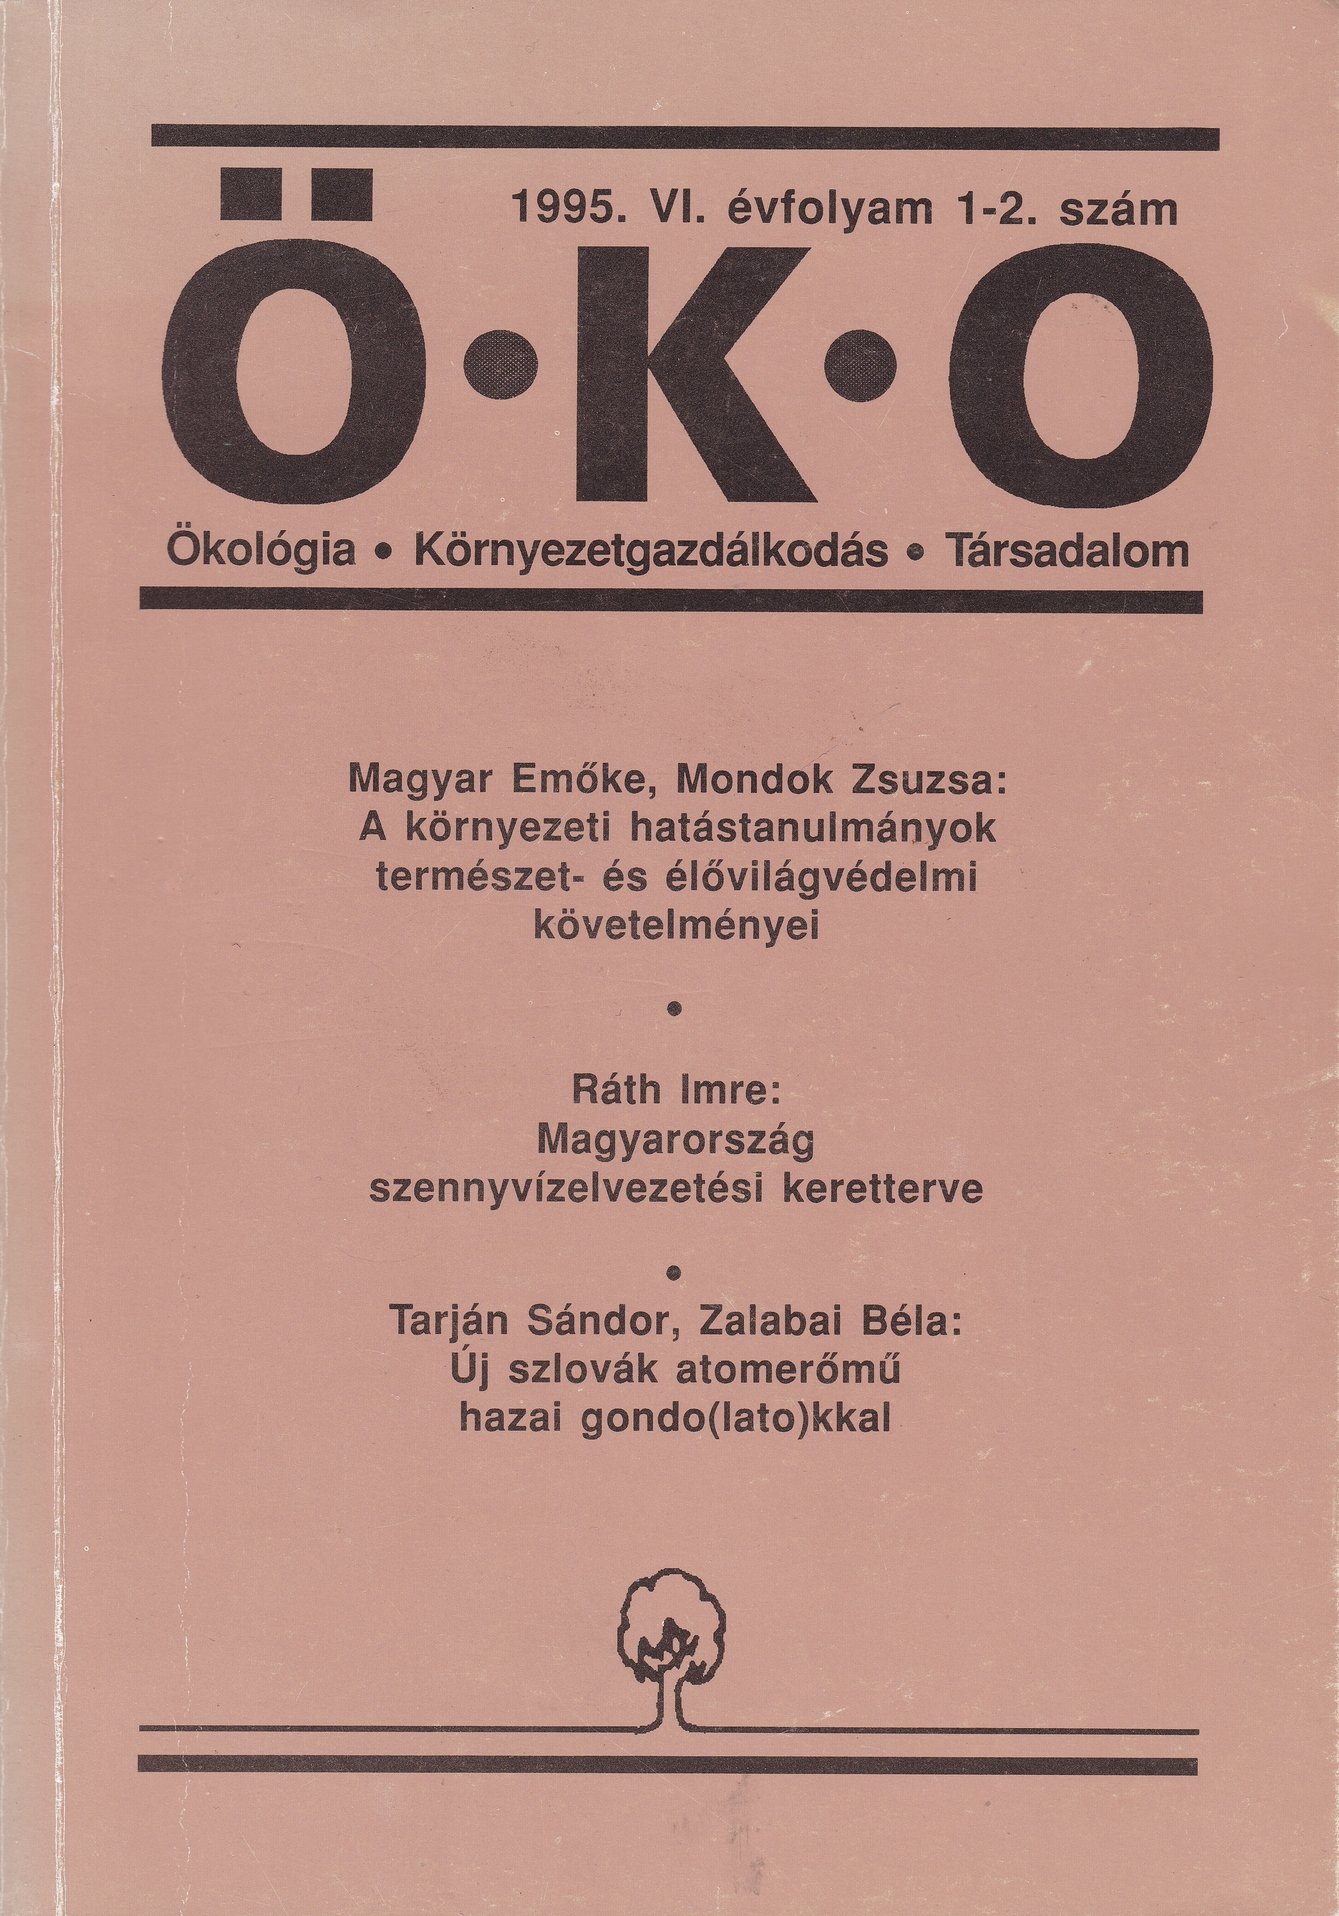 ÖKO. Ökológia, környezetgazdálkodás, társadalom 1995/6. évf. 1-2. sz. (Rippl-Rónai Múzeum CC BY-NC-ND)